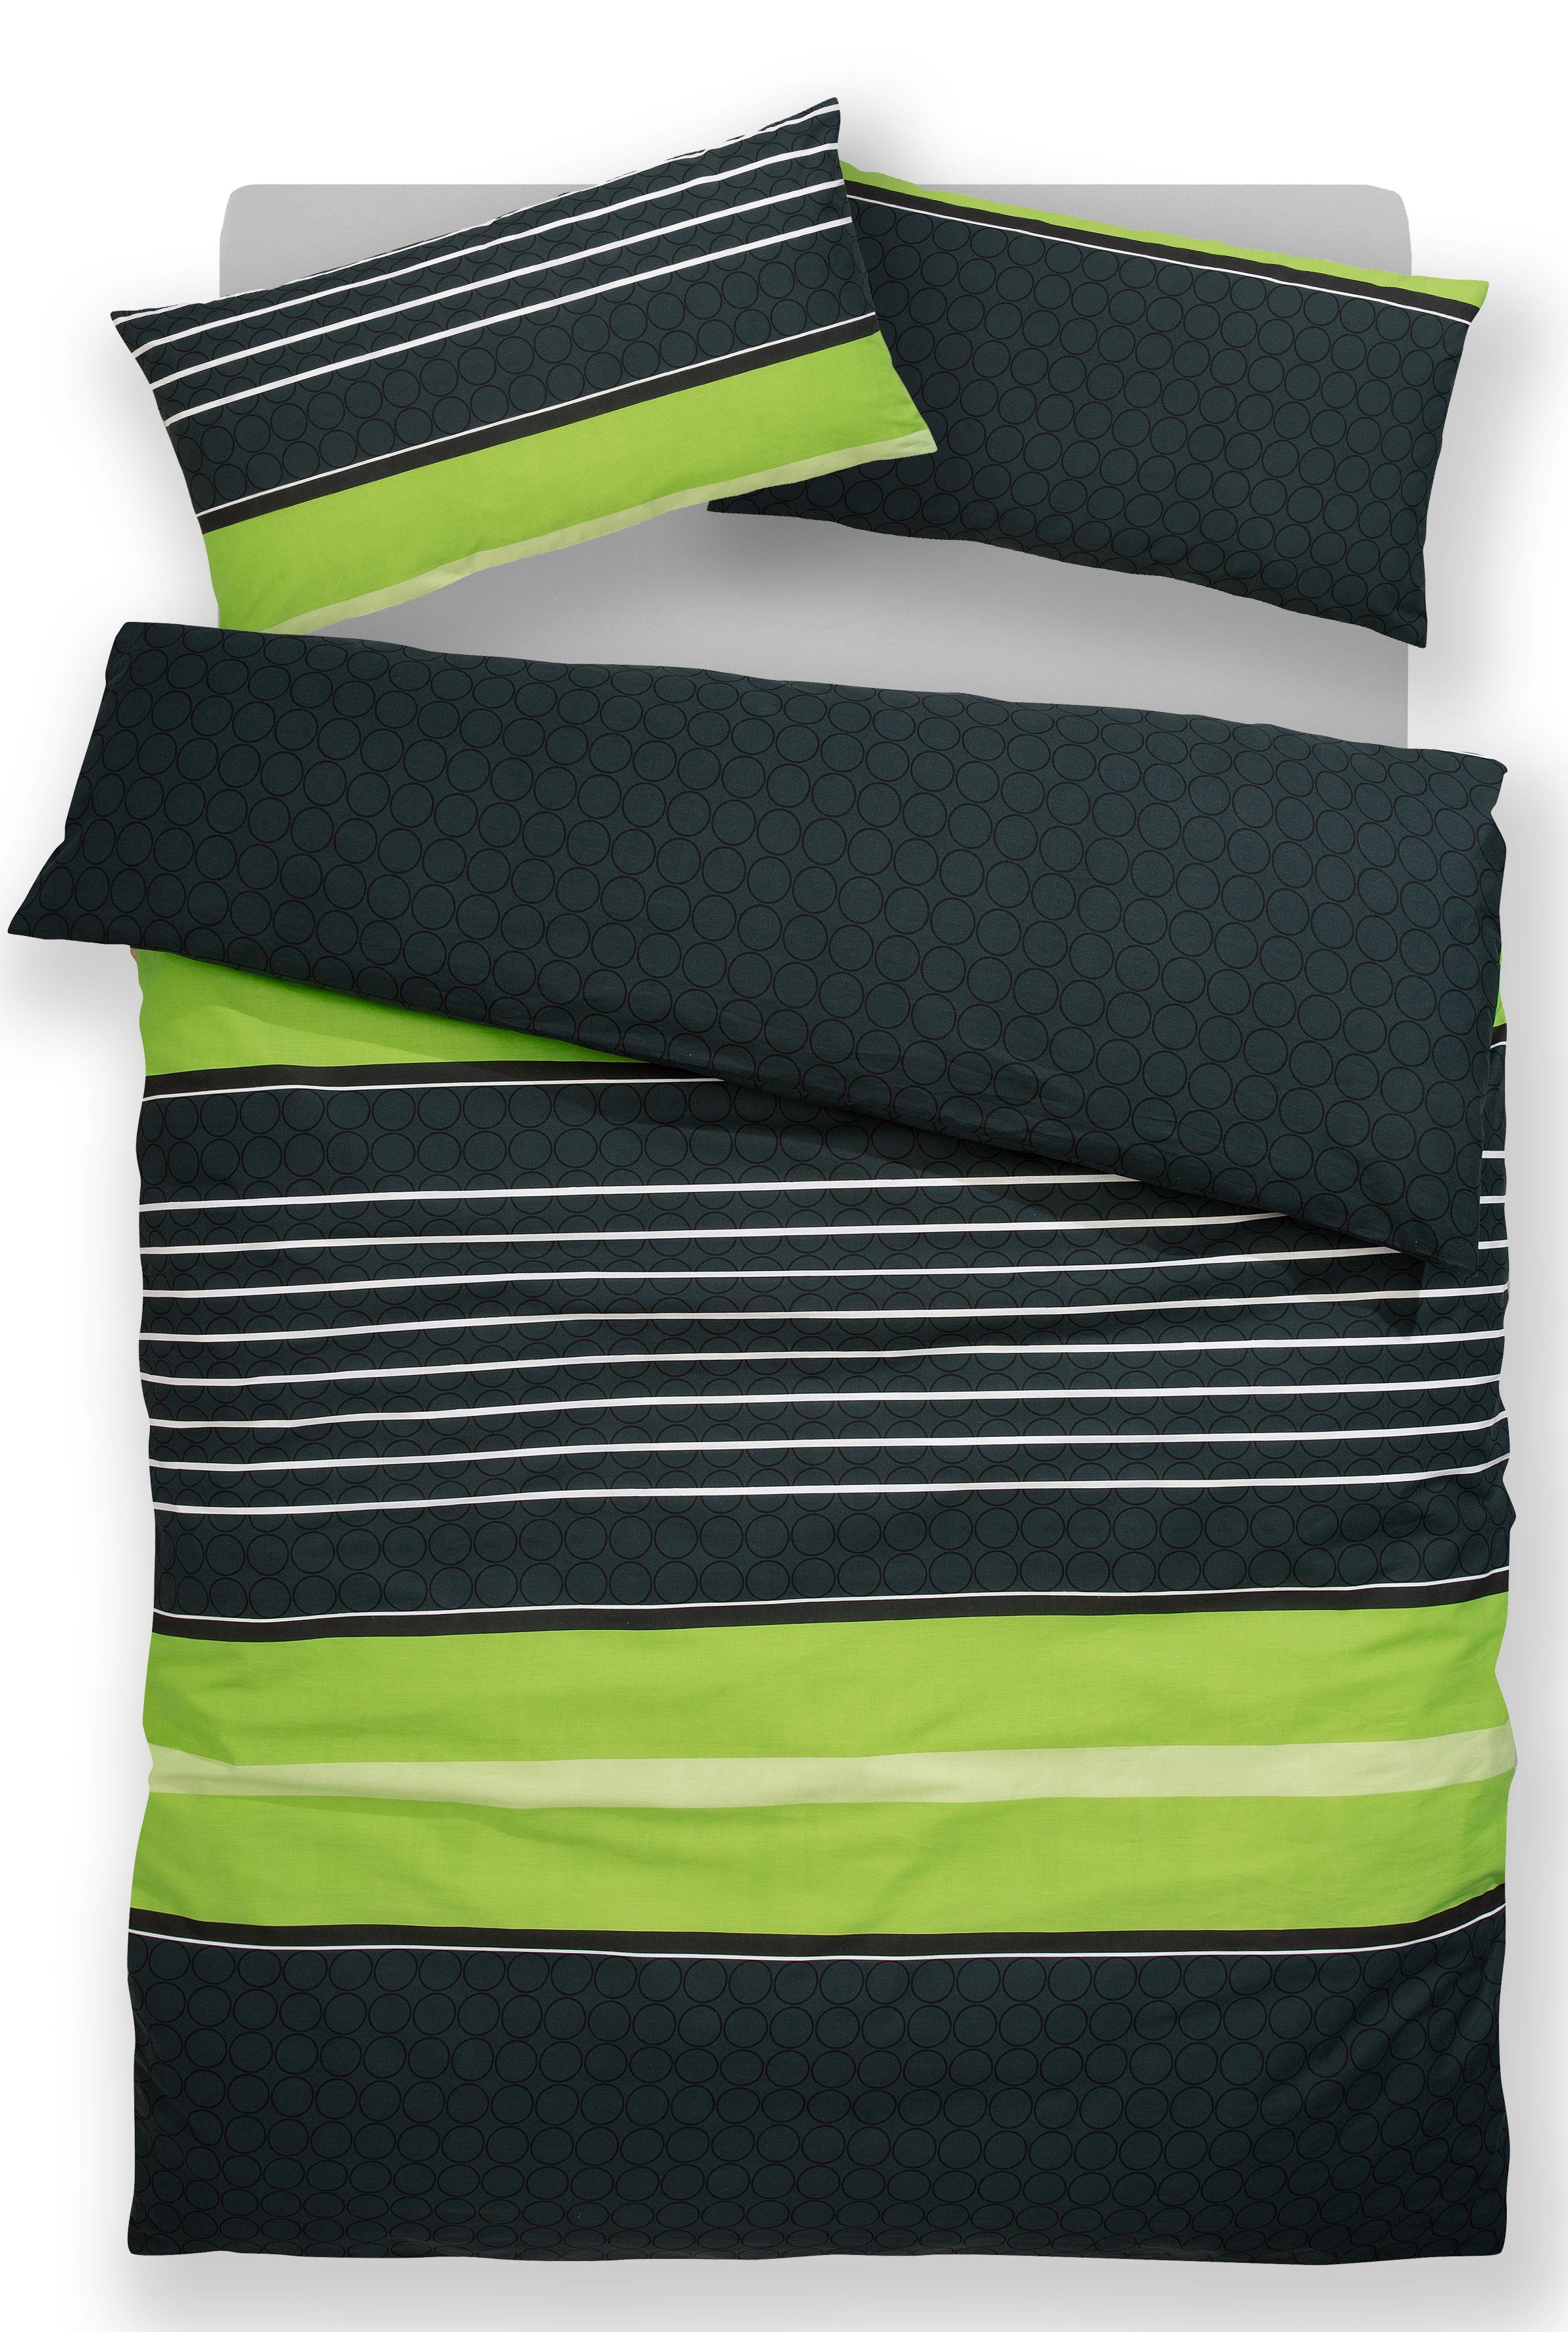 cm, 135x200 Gr. Baumwolle Bettwäsche moderne in Bettwäsche 2 aus teilig, my Linon, home, 155x220 oder Streifen-Design, Bettwäsche mit Circle grün